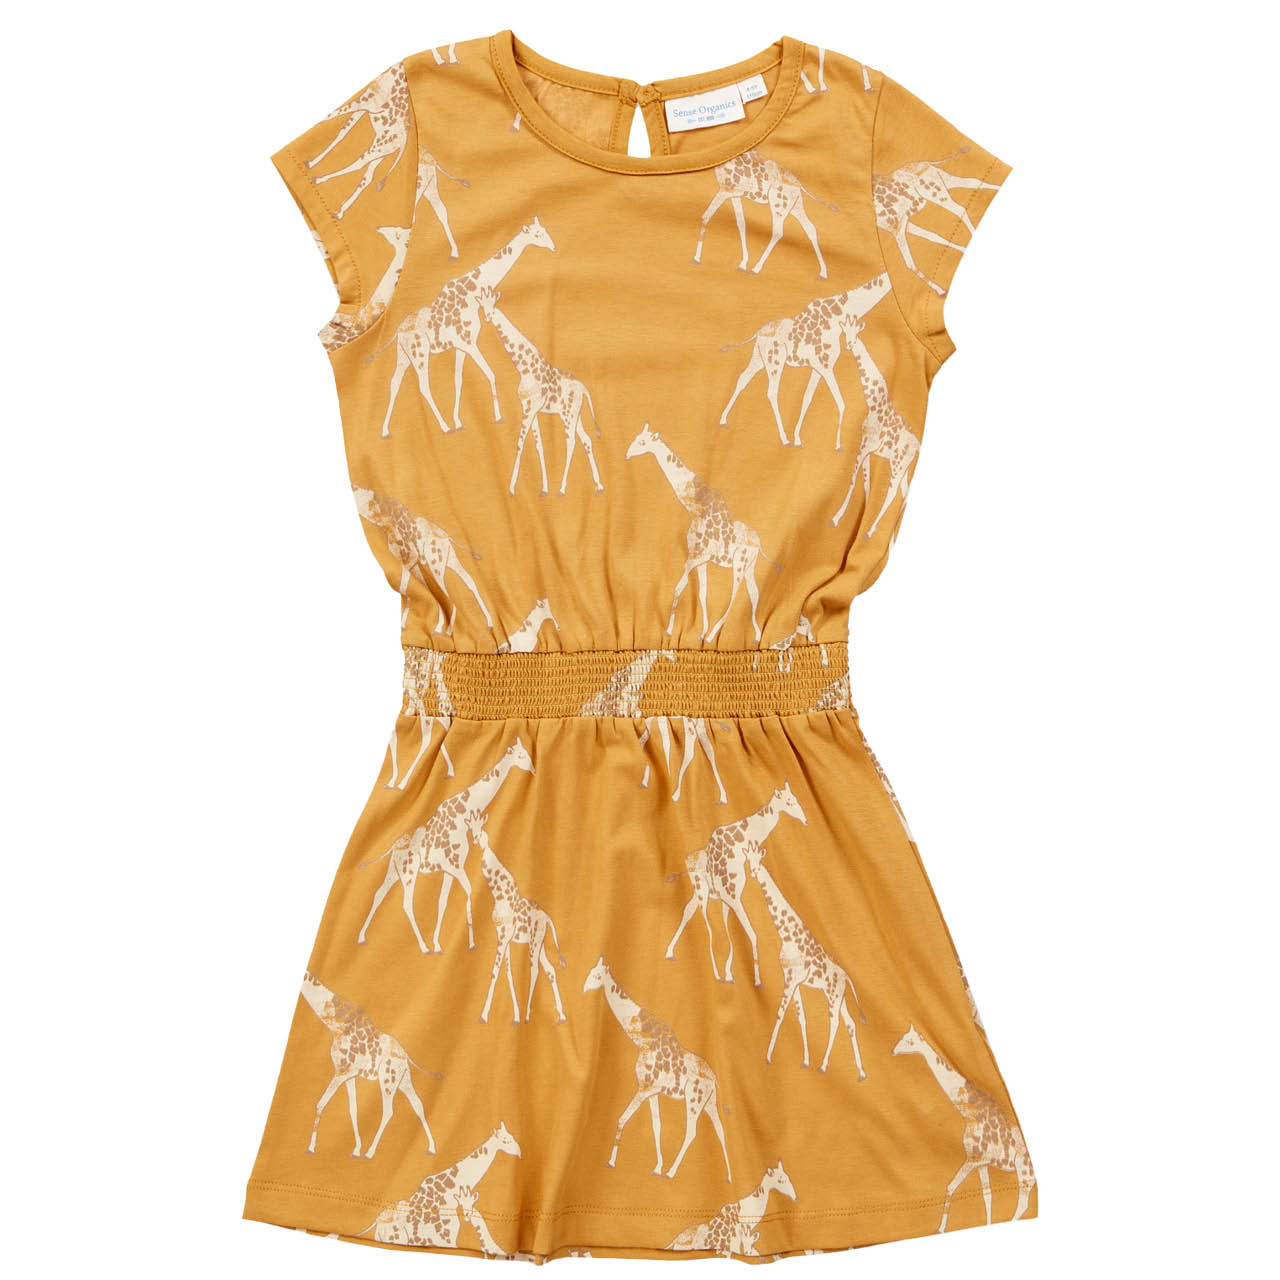 Leichtes Sommer Kleid Giraffen senf-gelb